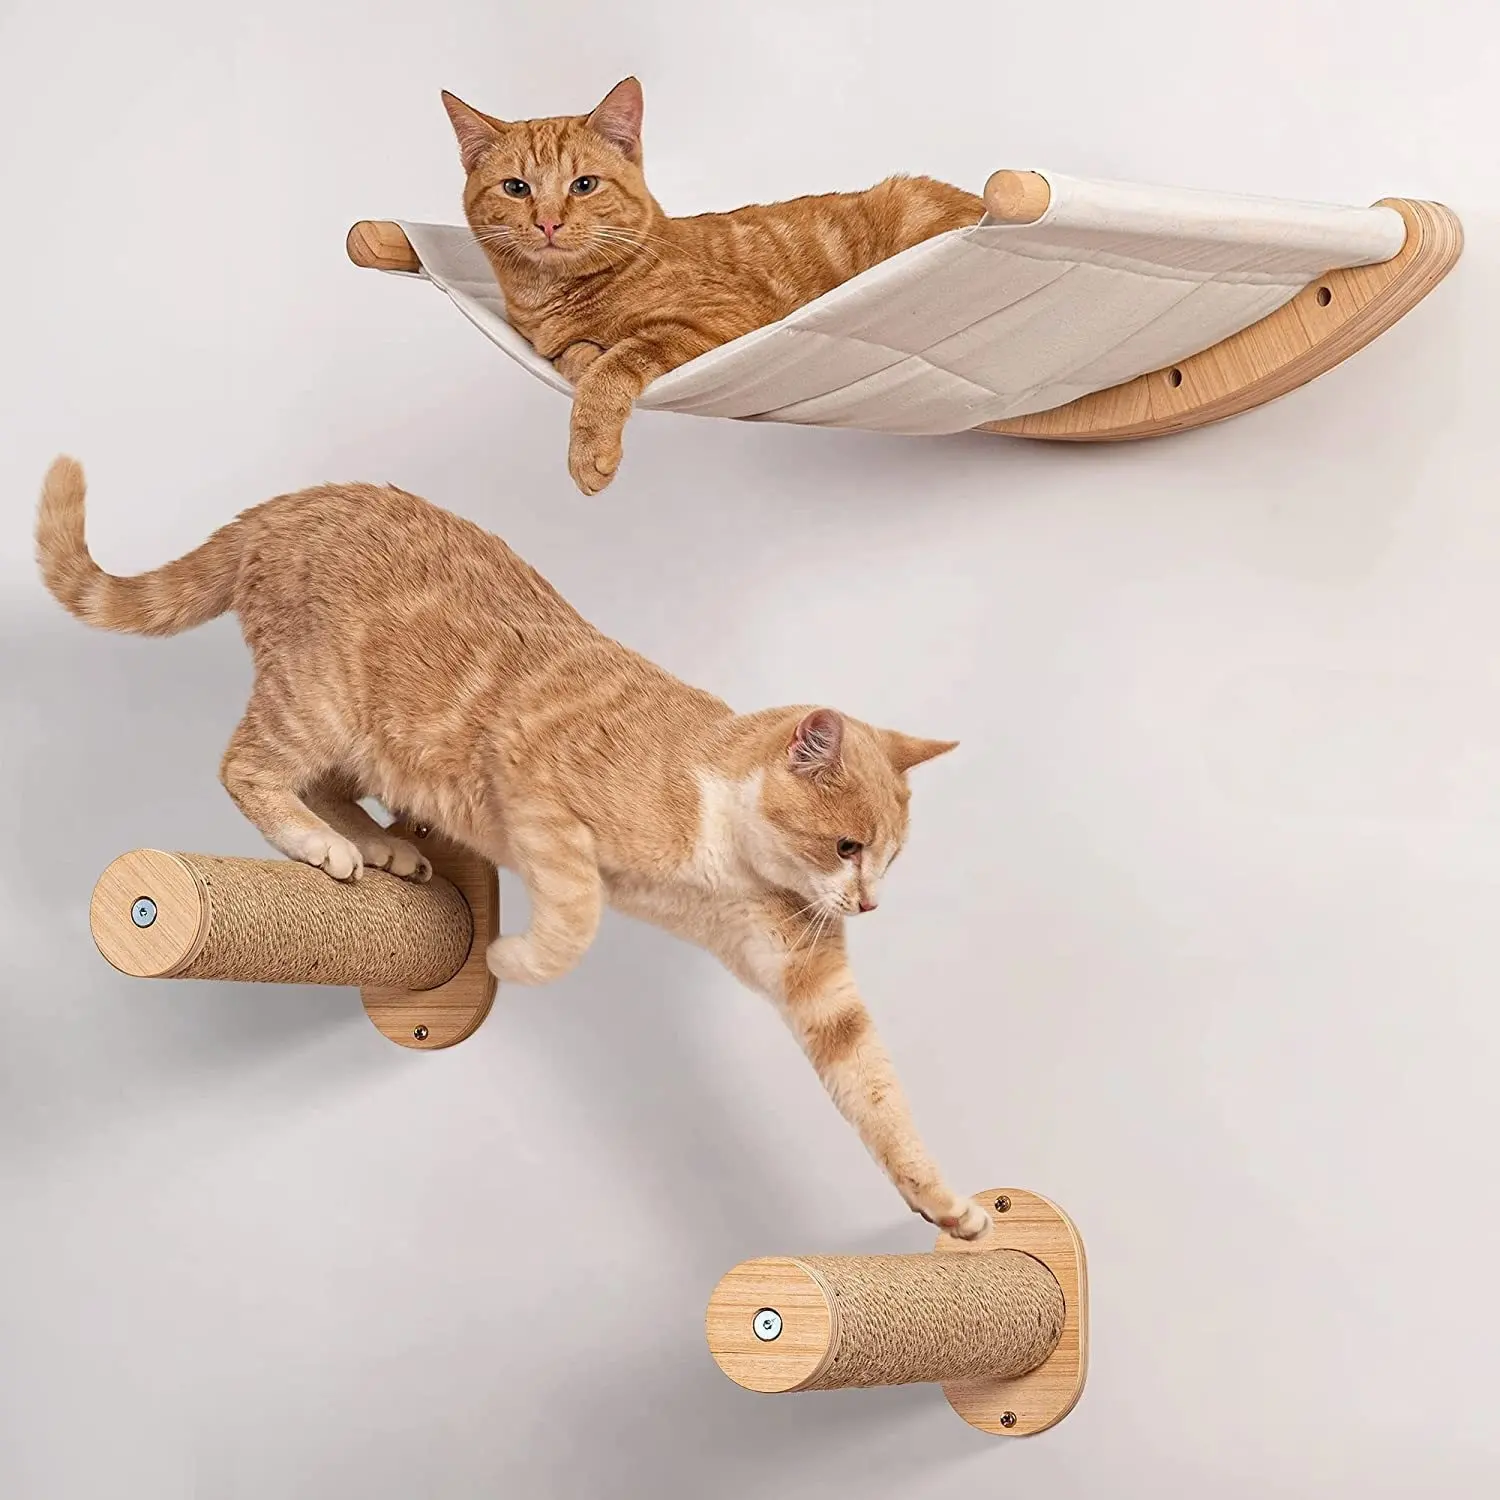 Haute qualité luxe 100% coton mural chat meubles en bois chat jouer maison lit suspendu chat hamac lit